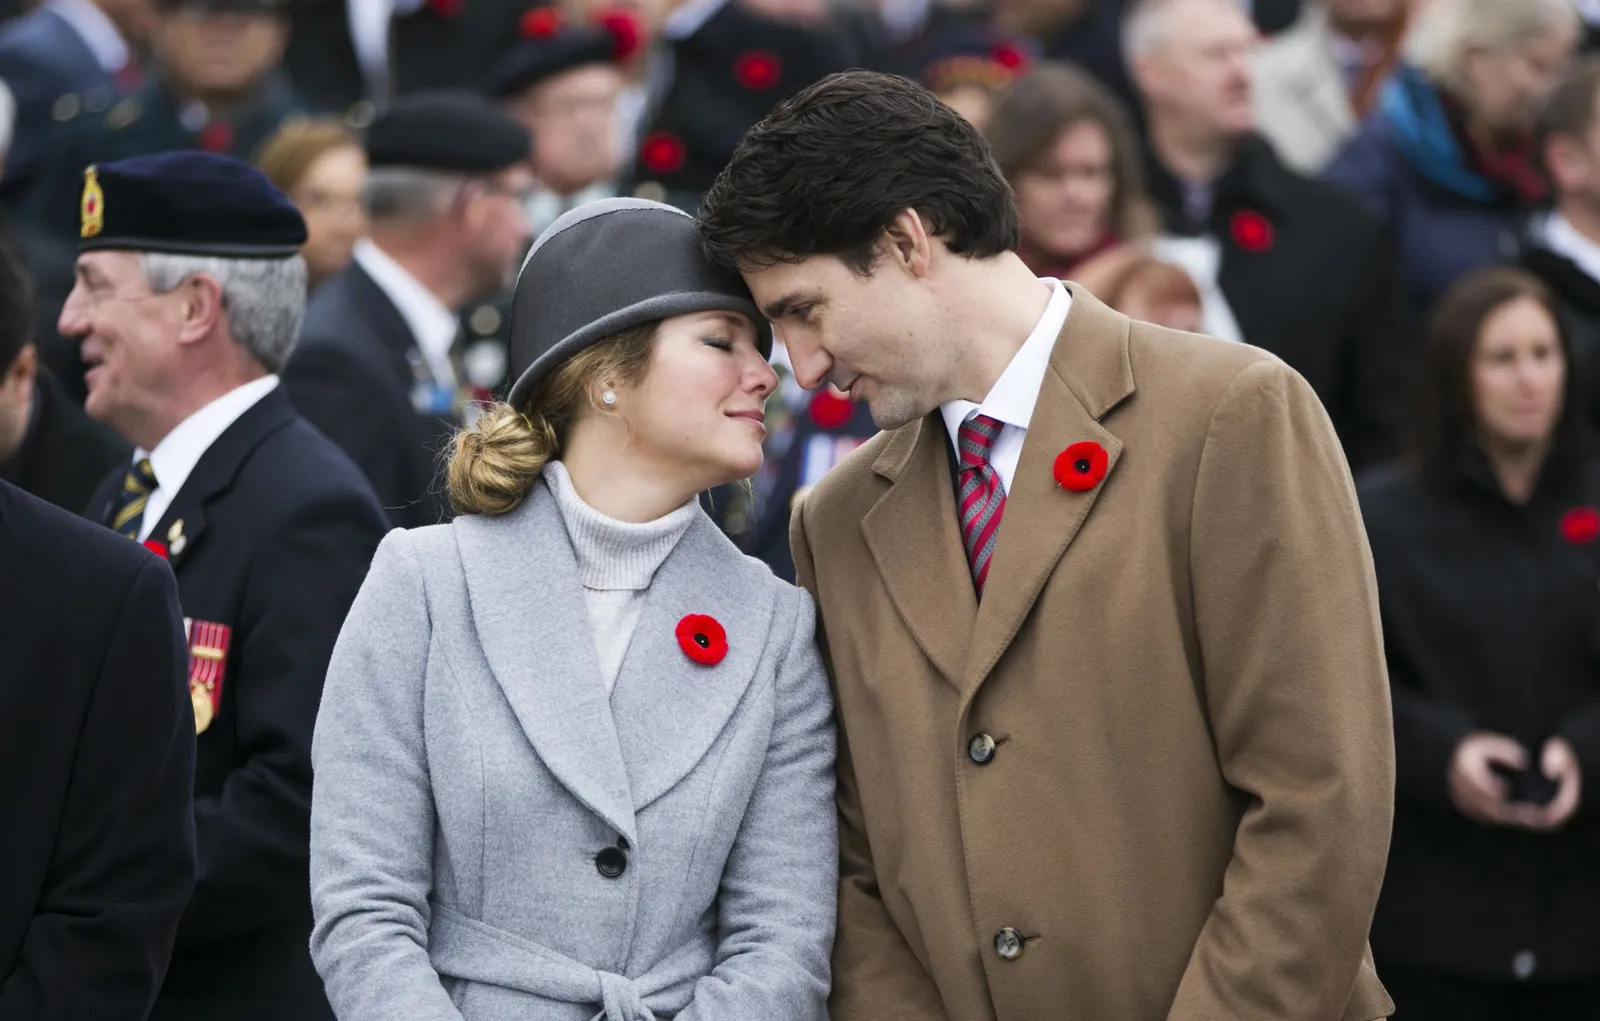 Mengisolasi Diri, Istri Justin Trudeau Positif Virus Corona